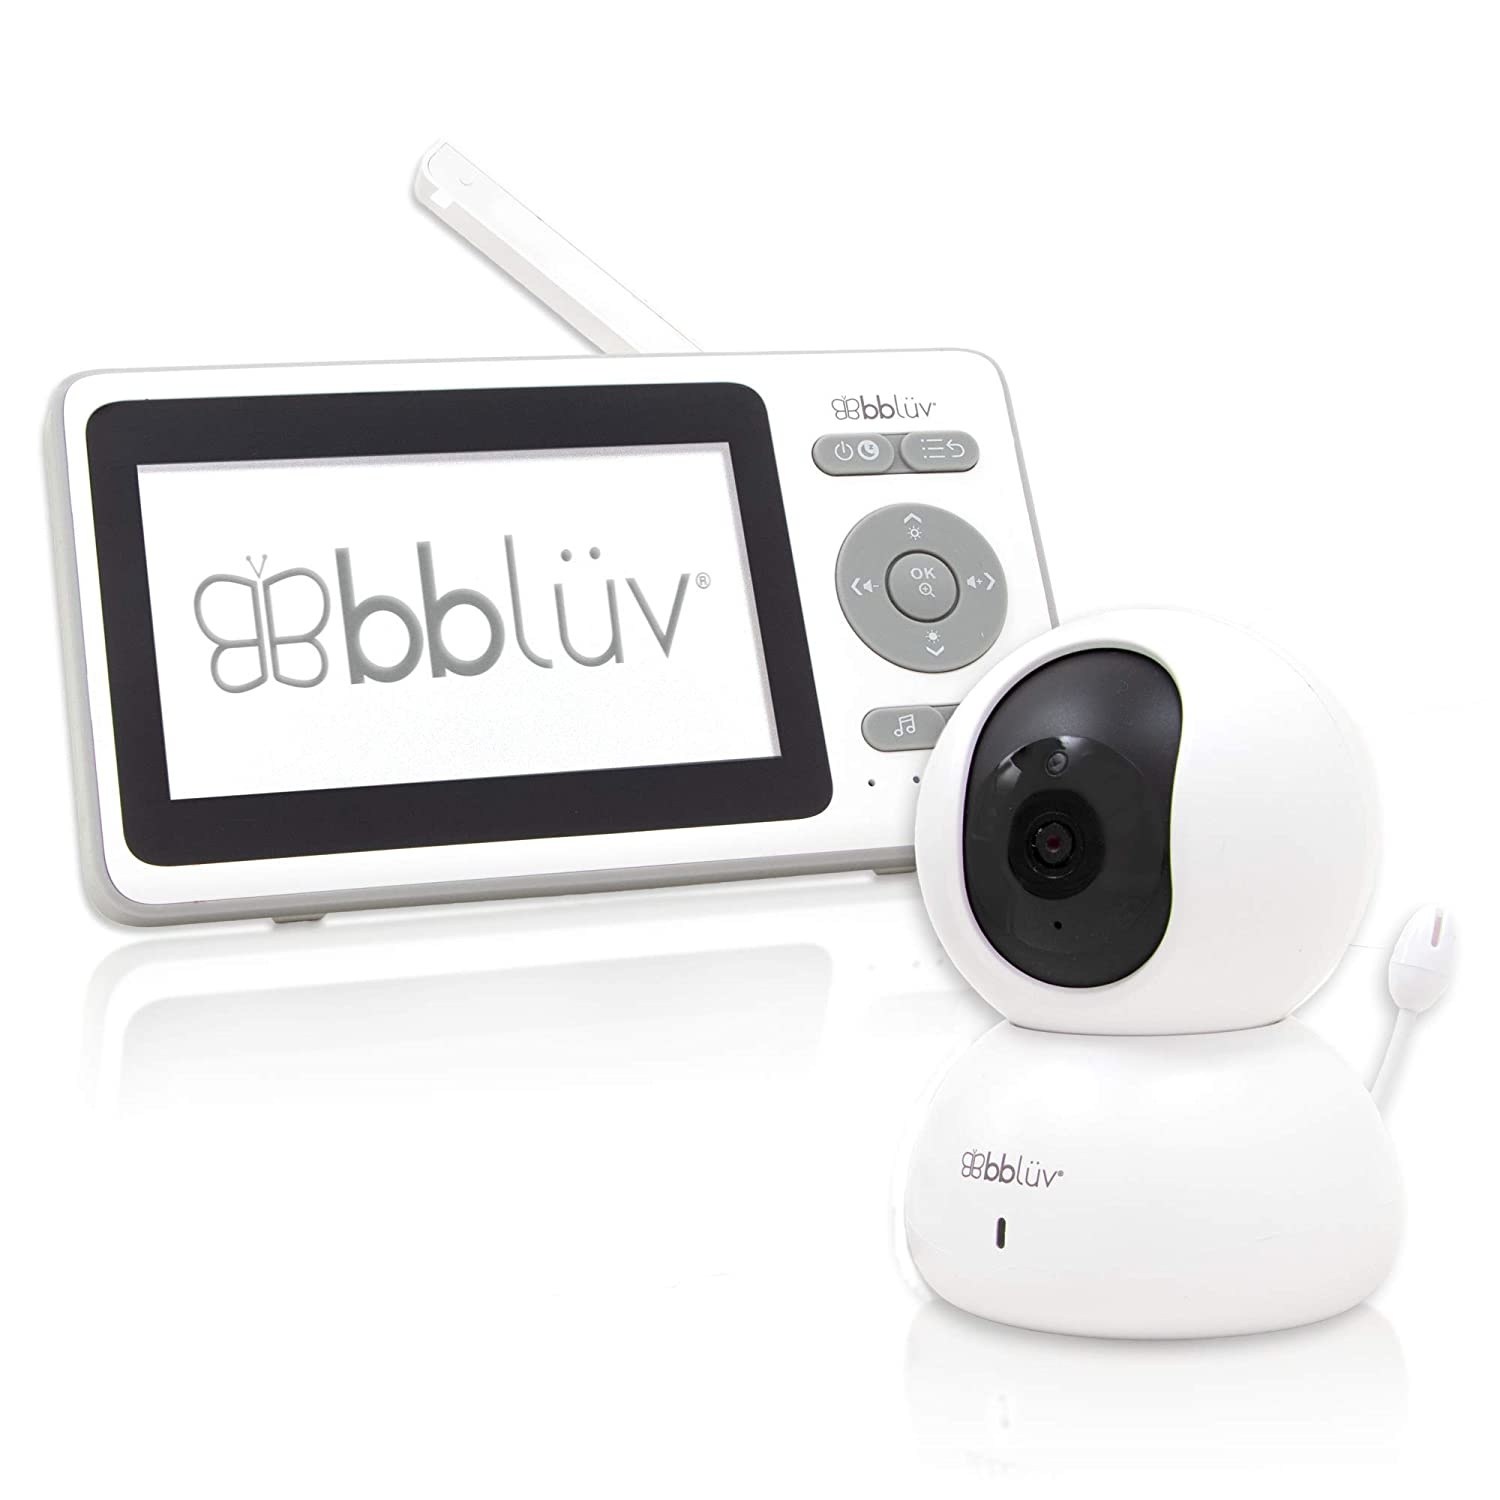 Moniteur vidéo de bébé avec caméra de Graco Moniteur vidéo de bébé 